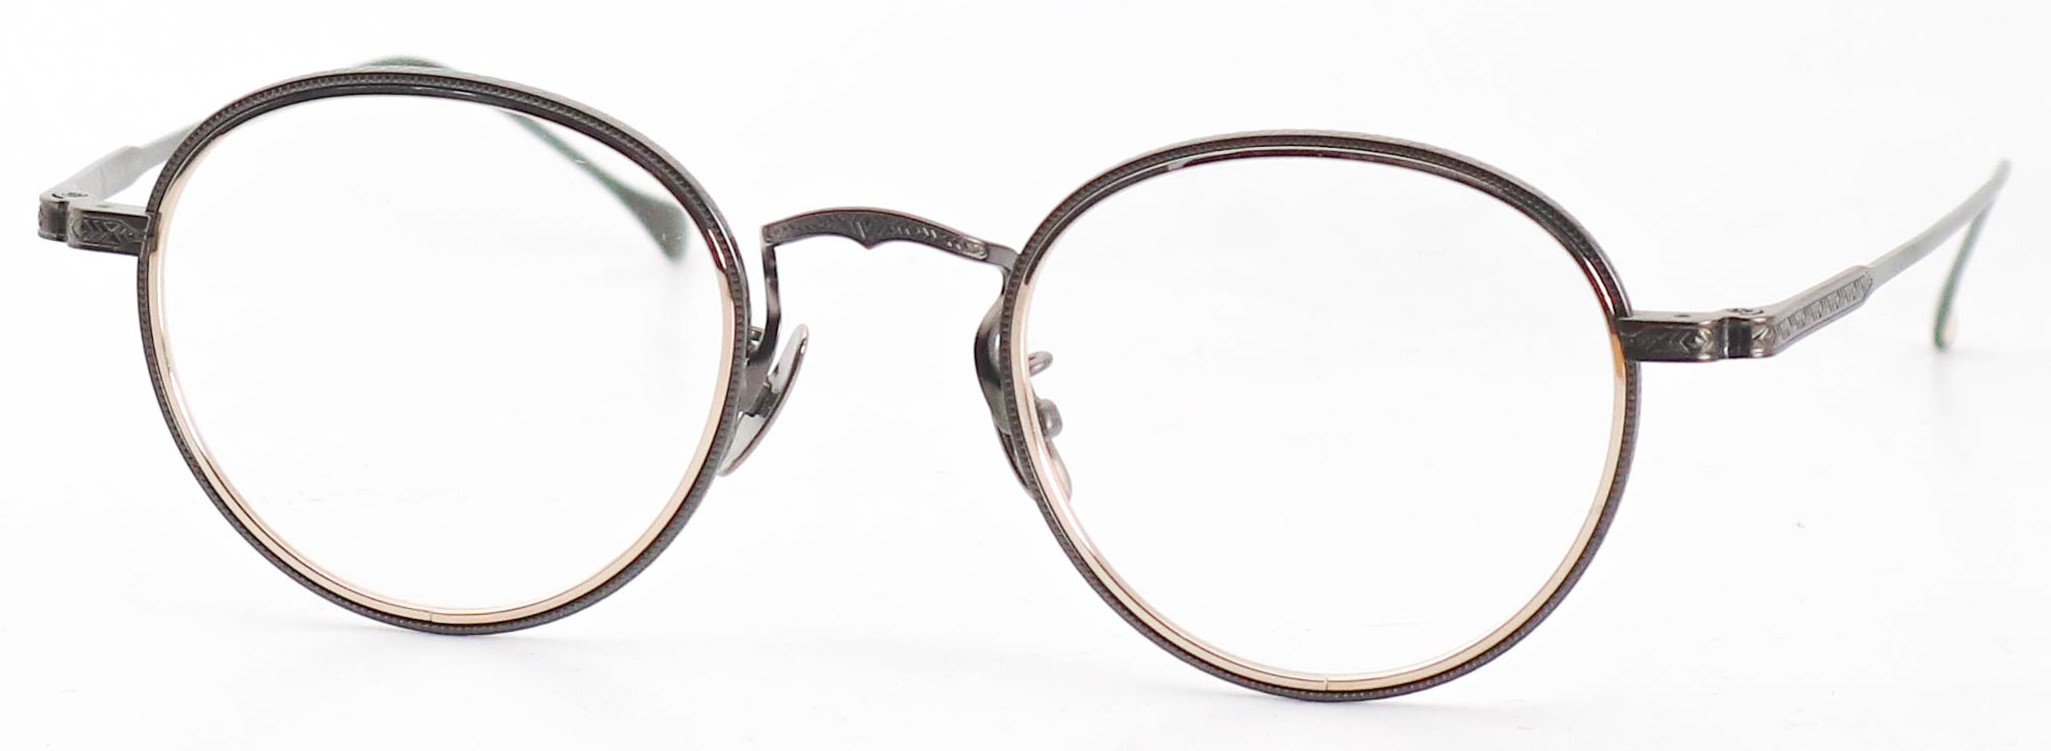 眼鏡のカラータイプC-4 Gold/Gray-Matt